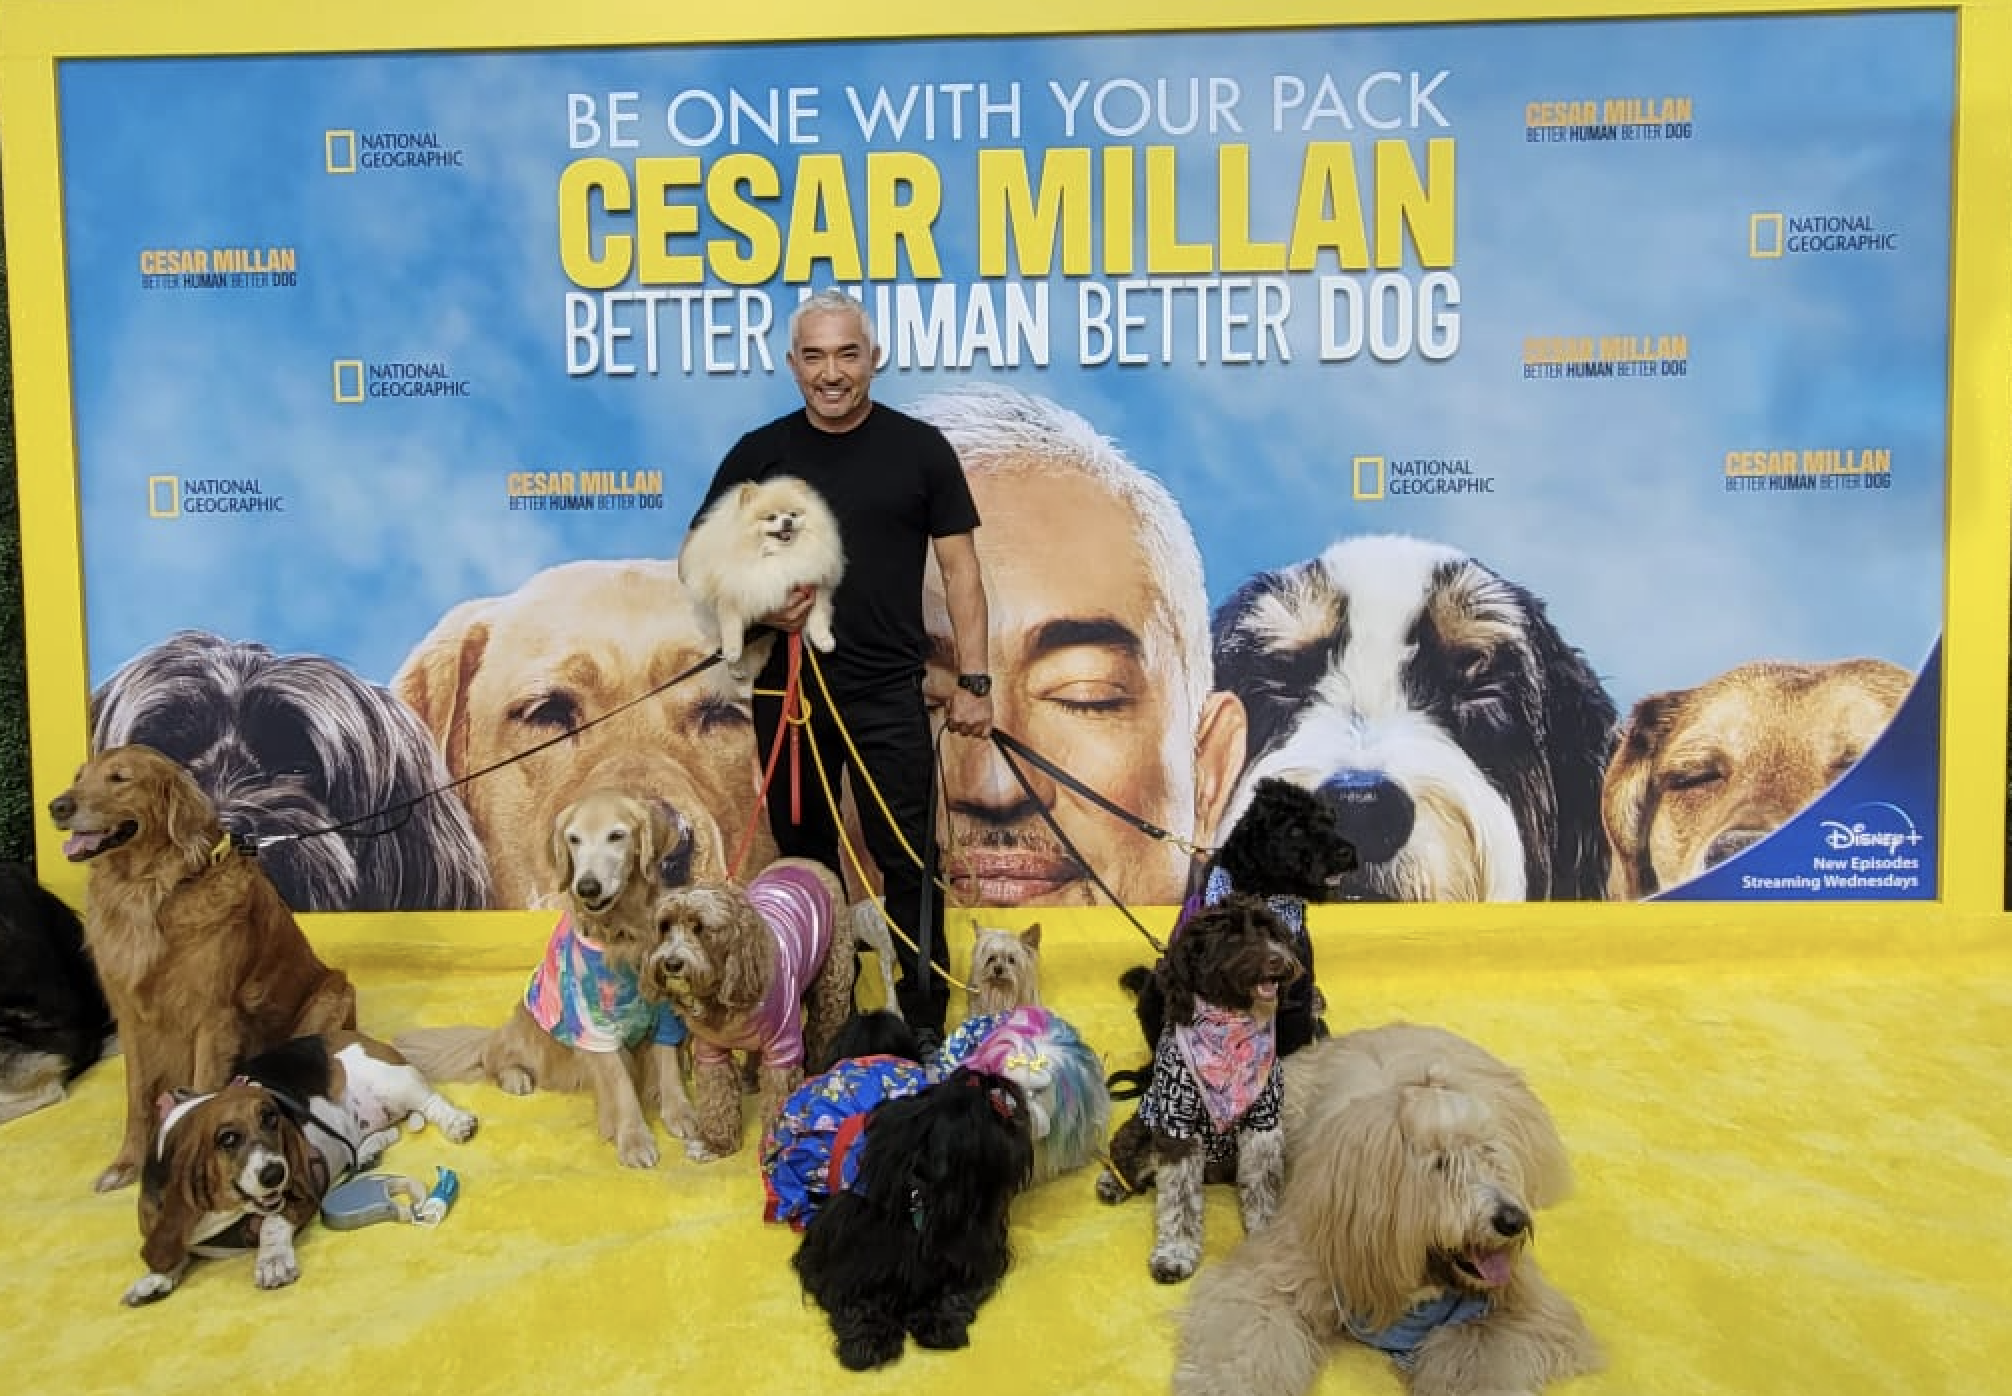 César Millán Habla De Better Human, Better Dog Y Clarifica Su Verdadera Ocupacíon [Entrevista Exclusiva]